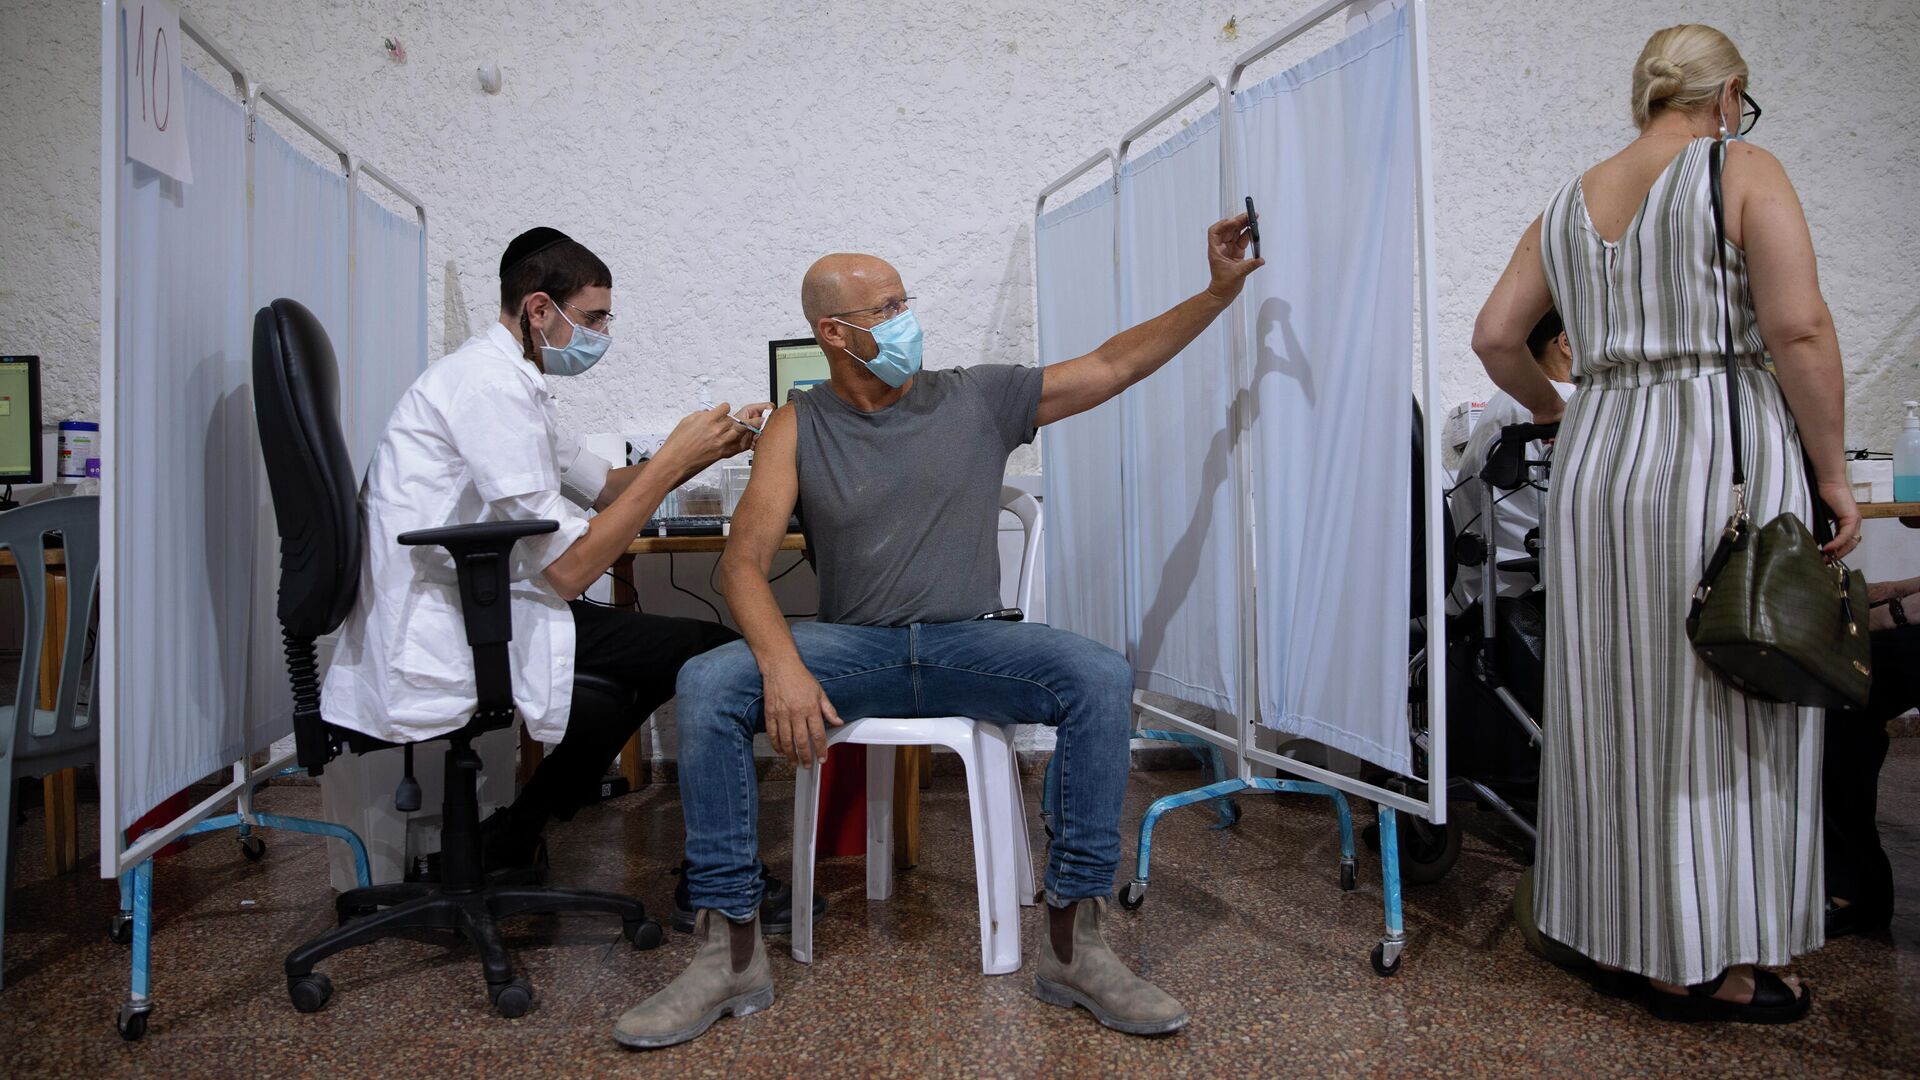 Израильтянин делает селфи во время вакцинации препаратом Pfizer-BioNTech COVID-19 в Рамат-Гане, Израиль - РИА Новости, 1920, 01.12.2021